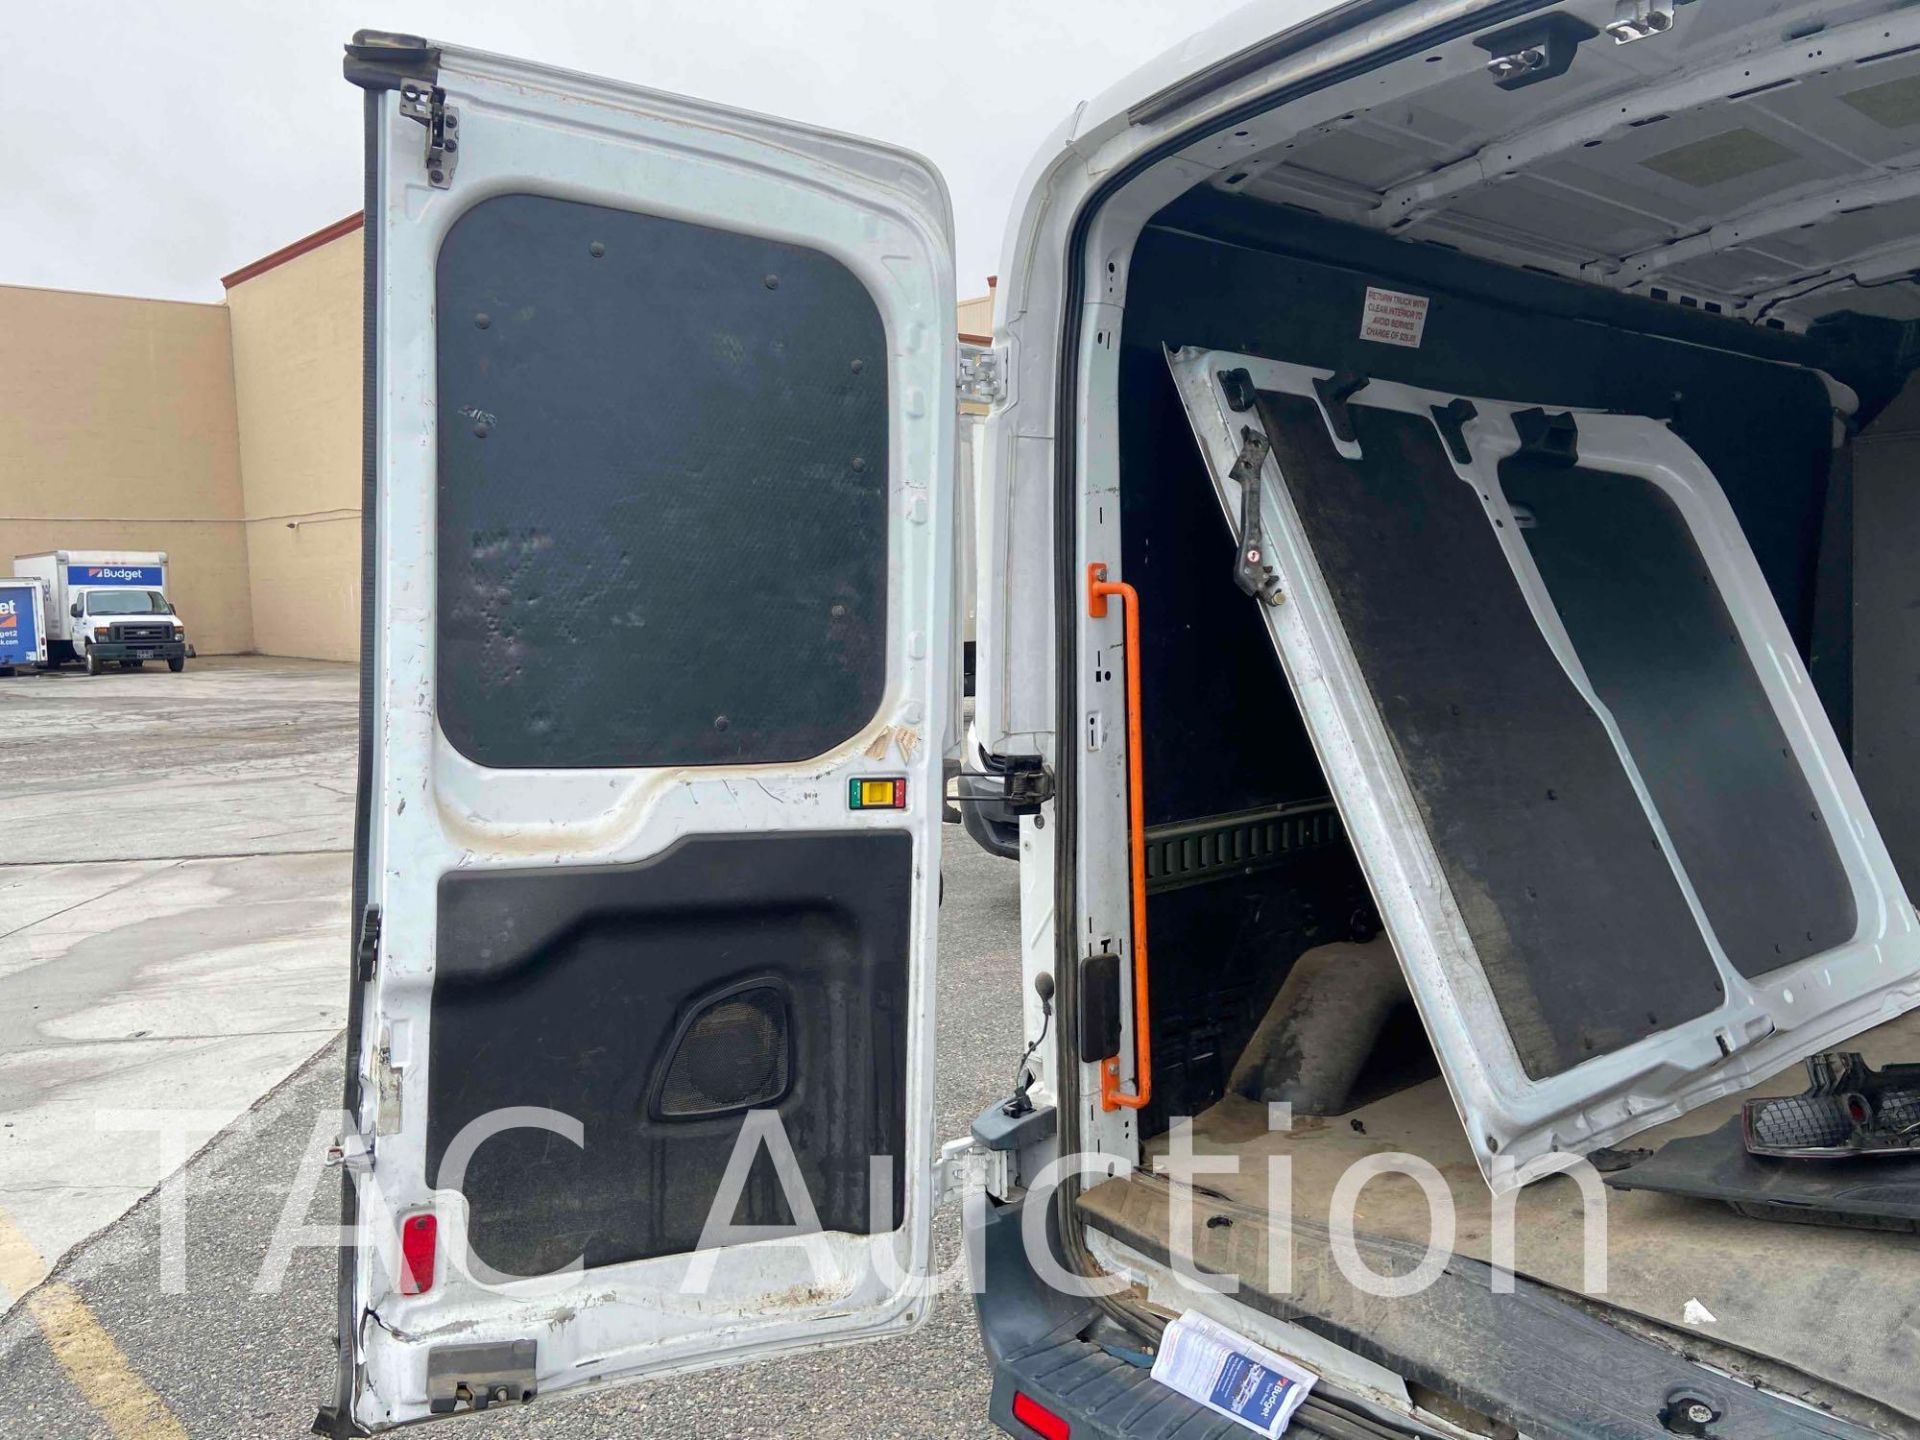 2017 Ford Transit 150 Cargo Van - Image 38 of 86